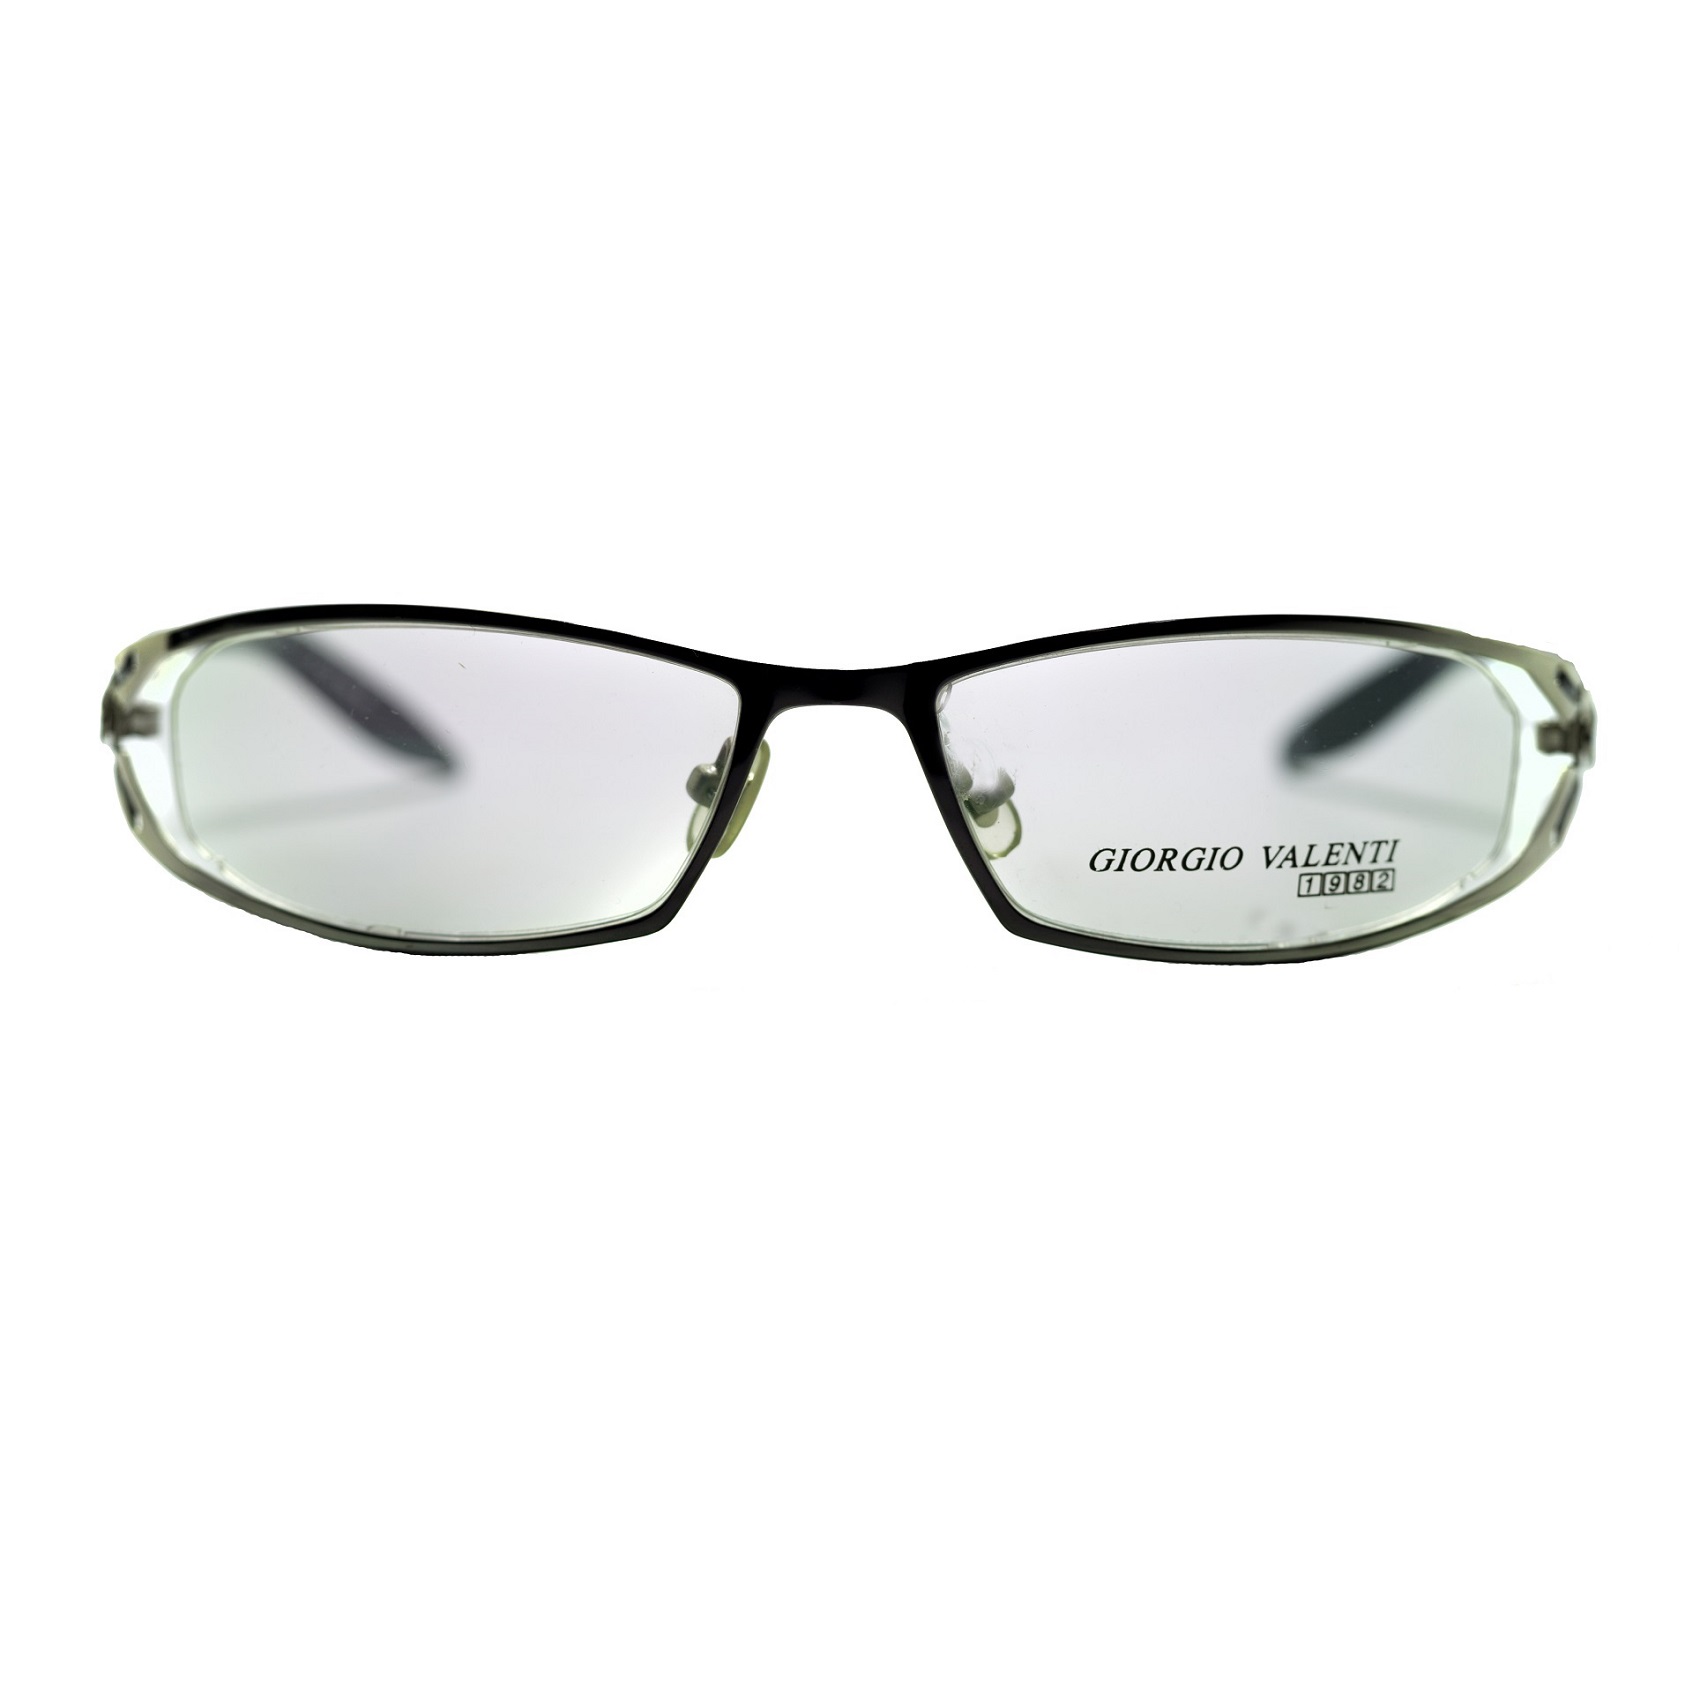 فریم عینک طبی جورجیو ولنتی مدل 613